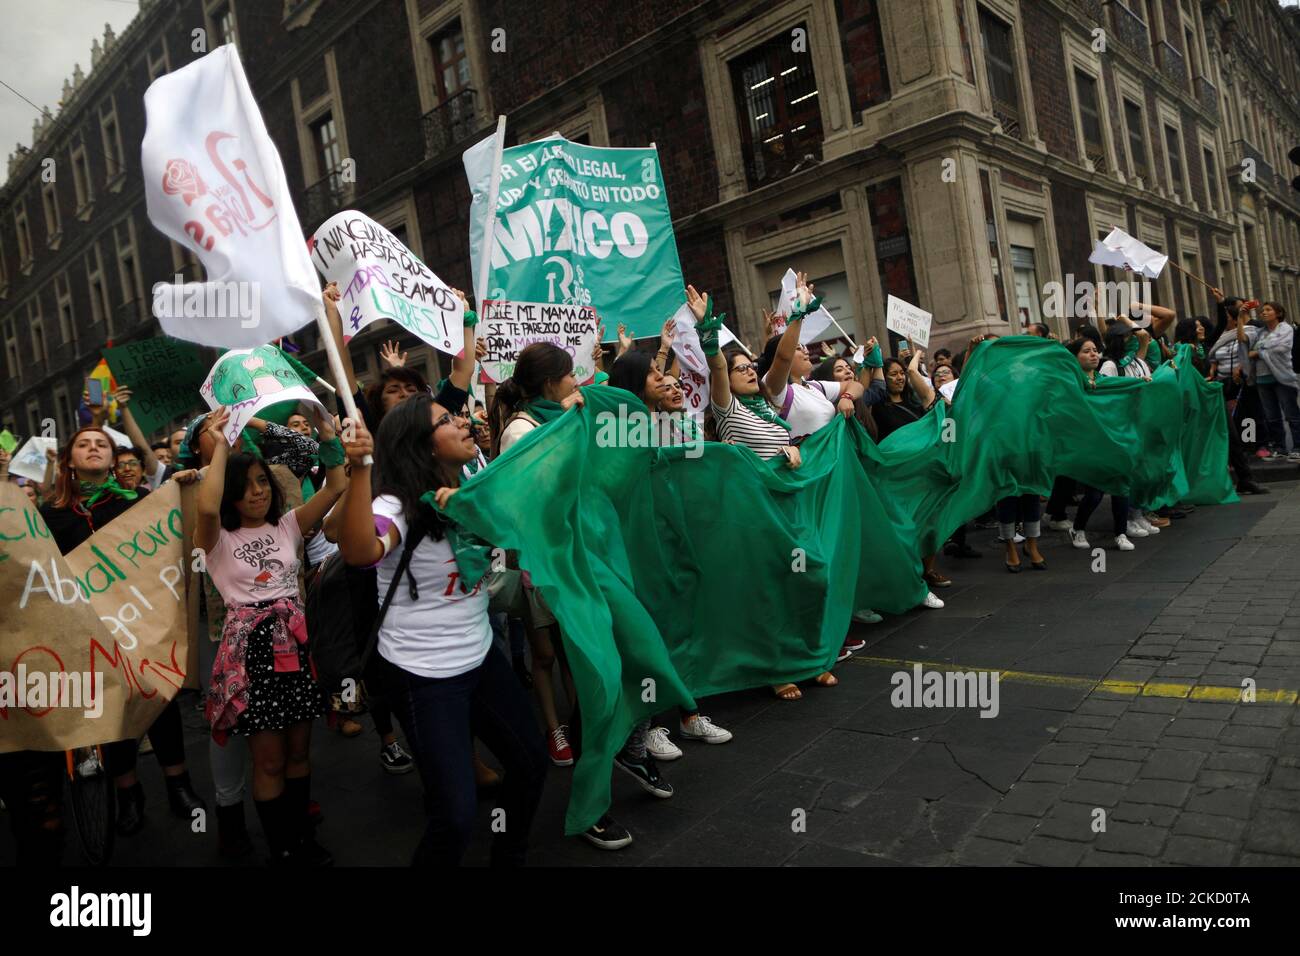 Activistas por los derechos del aborto participan en una manifestación en apoyo del aborto legal y seguro en la Ciudad de México, México, 28 de septiembre de 2018. REUTERS/Edgard Garrido Foto de stock